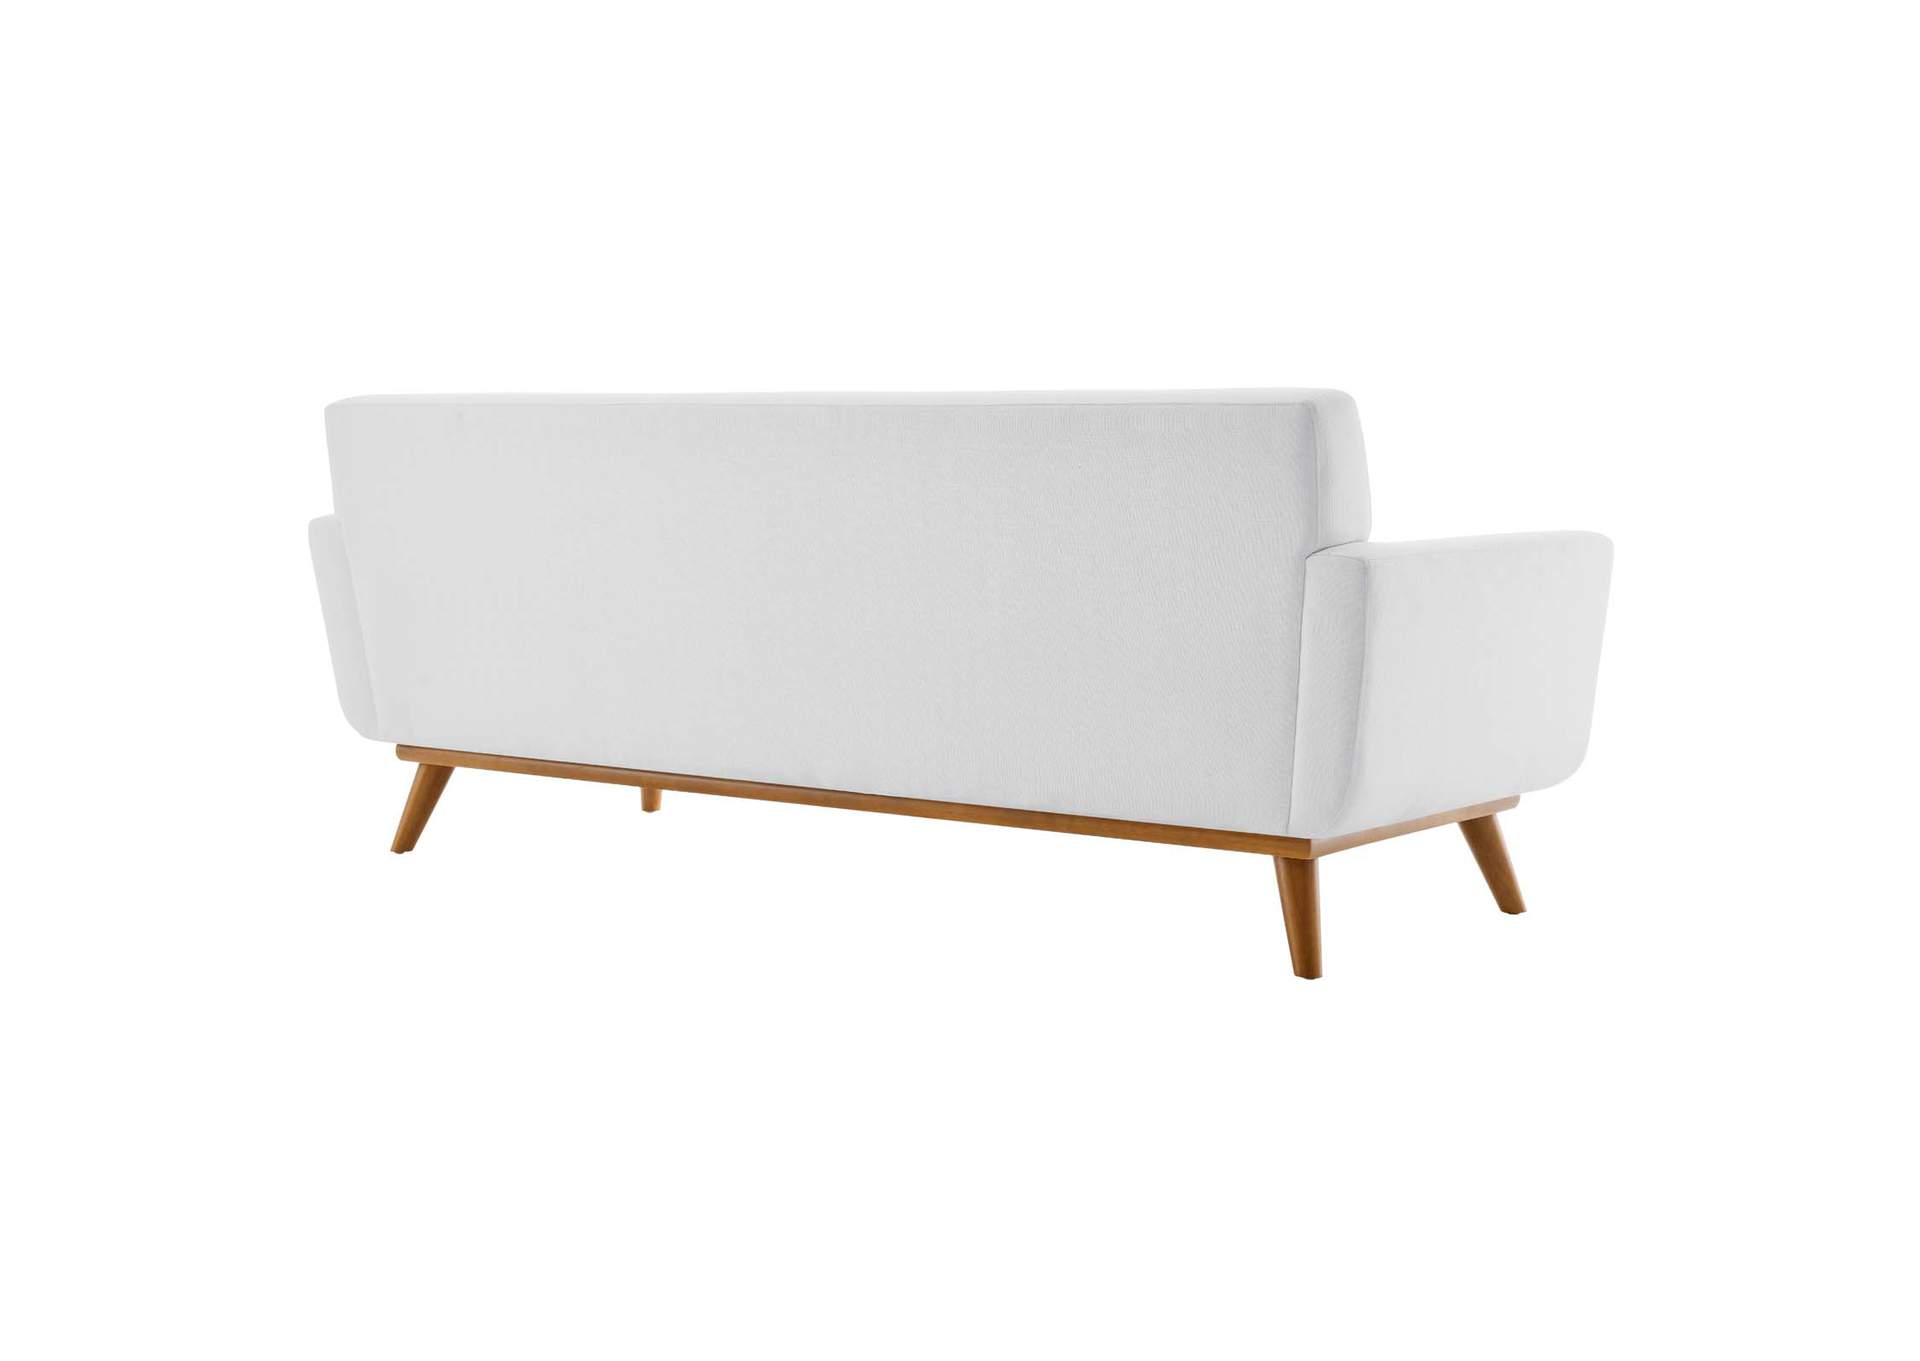 Engage Upholstered Fabric Sofa,Modway